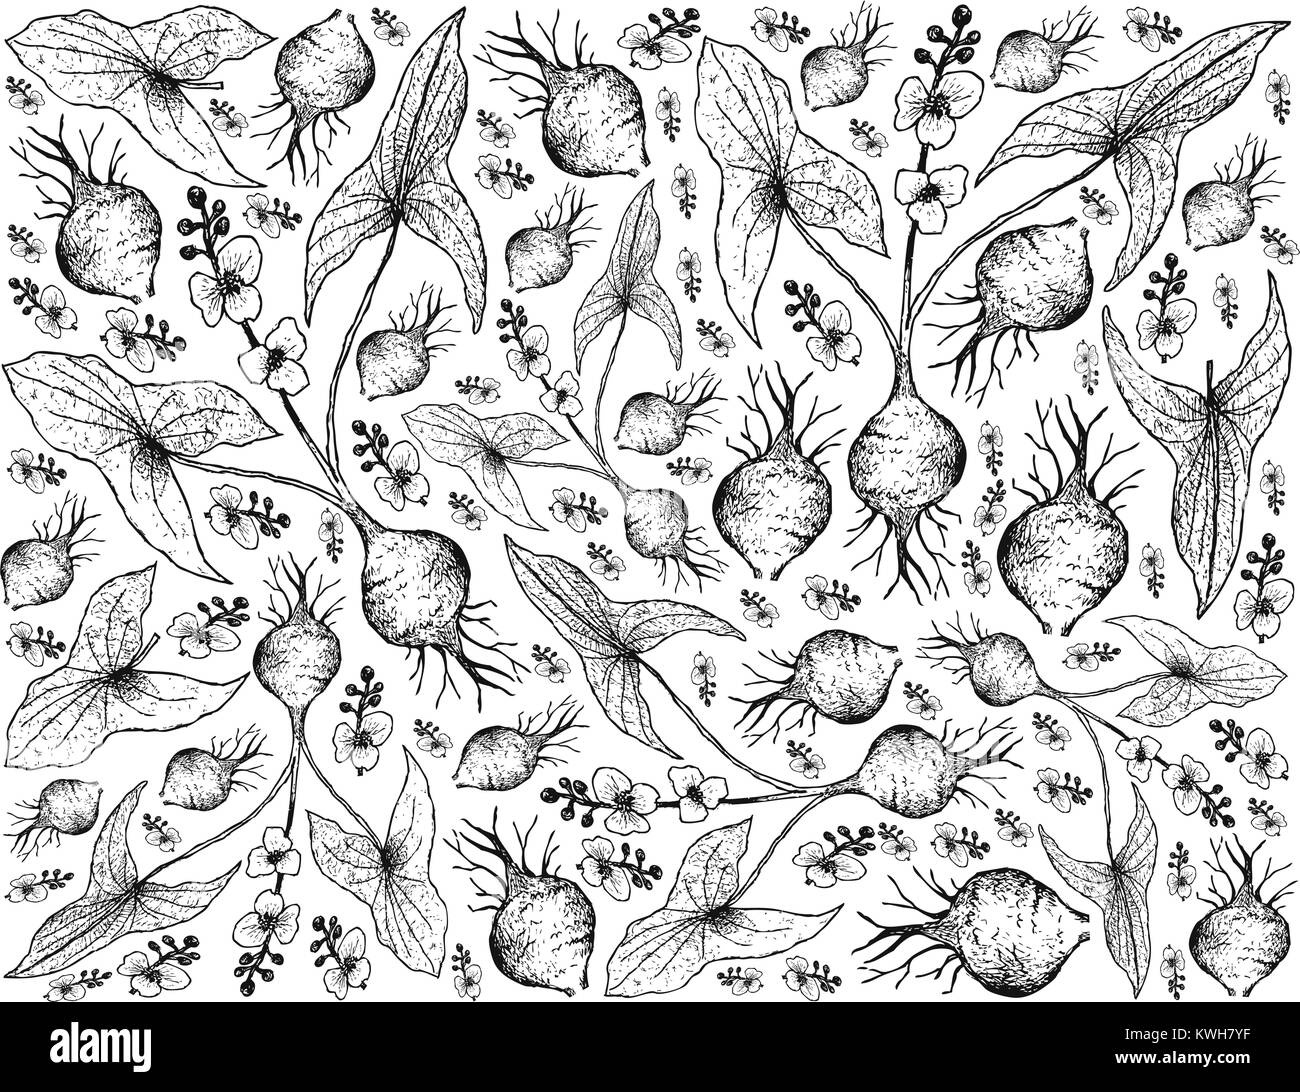 Radici tuberose e verdure, Illustrazione disegnata a mano schizzo di latifoglie o Arrowhead Sagittaria Latifolia impianto isolato su sfondo bianco. Illustrazione Vettoriale